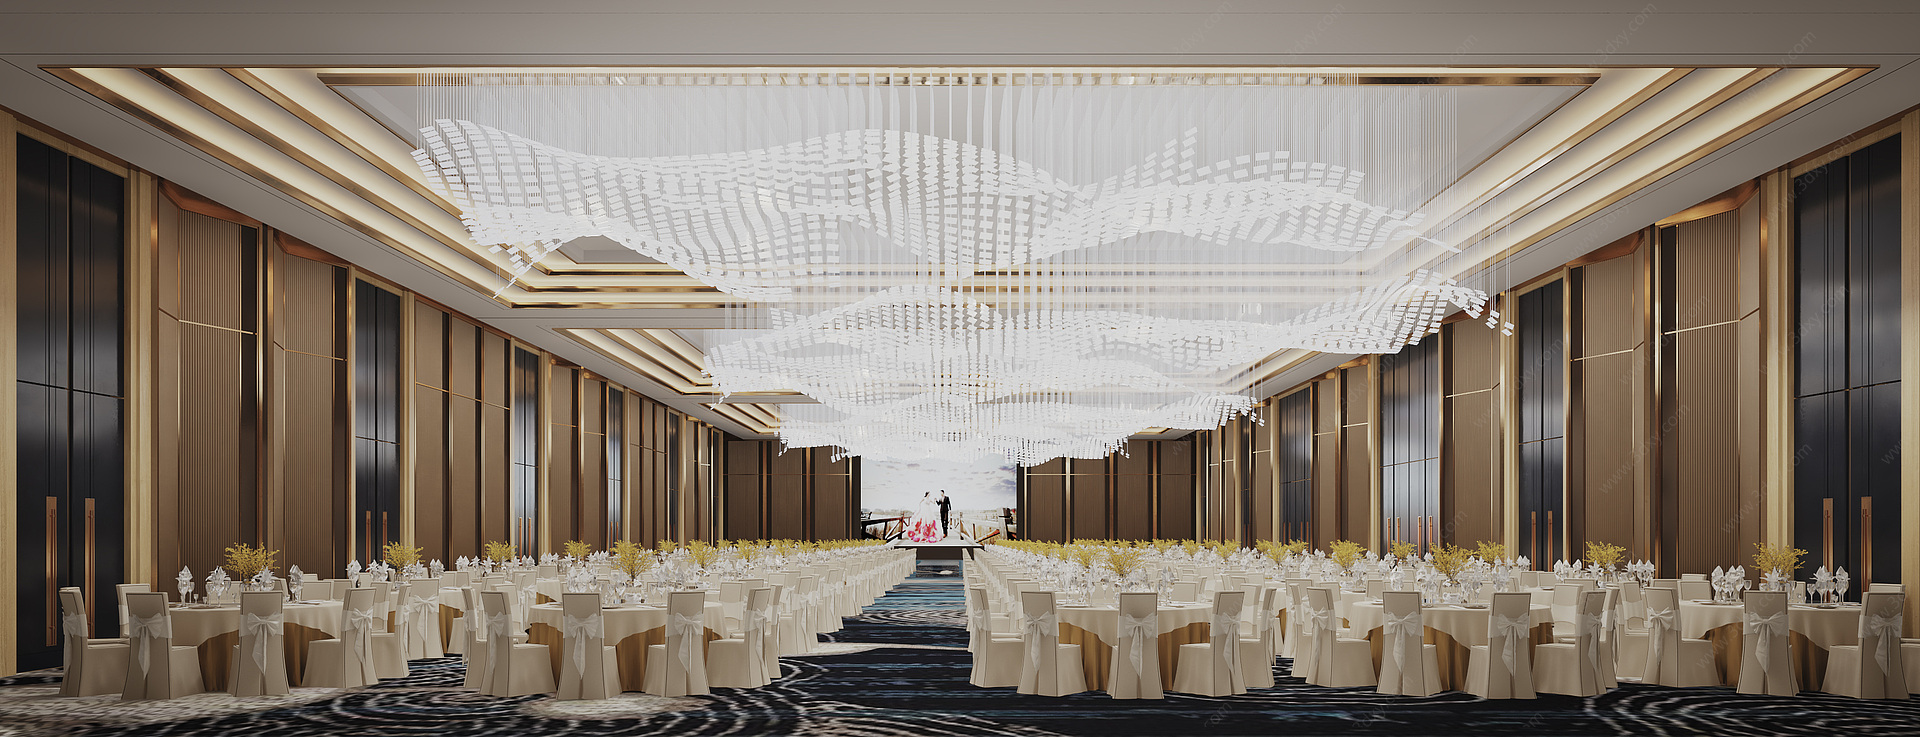 现代酒店宴会厅3D模型